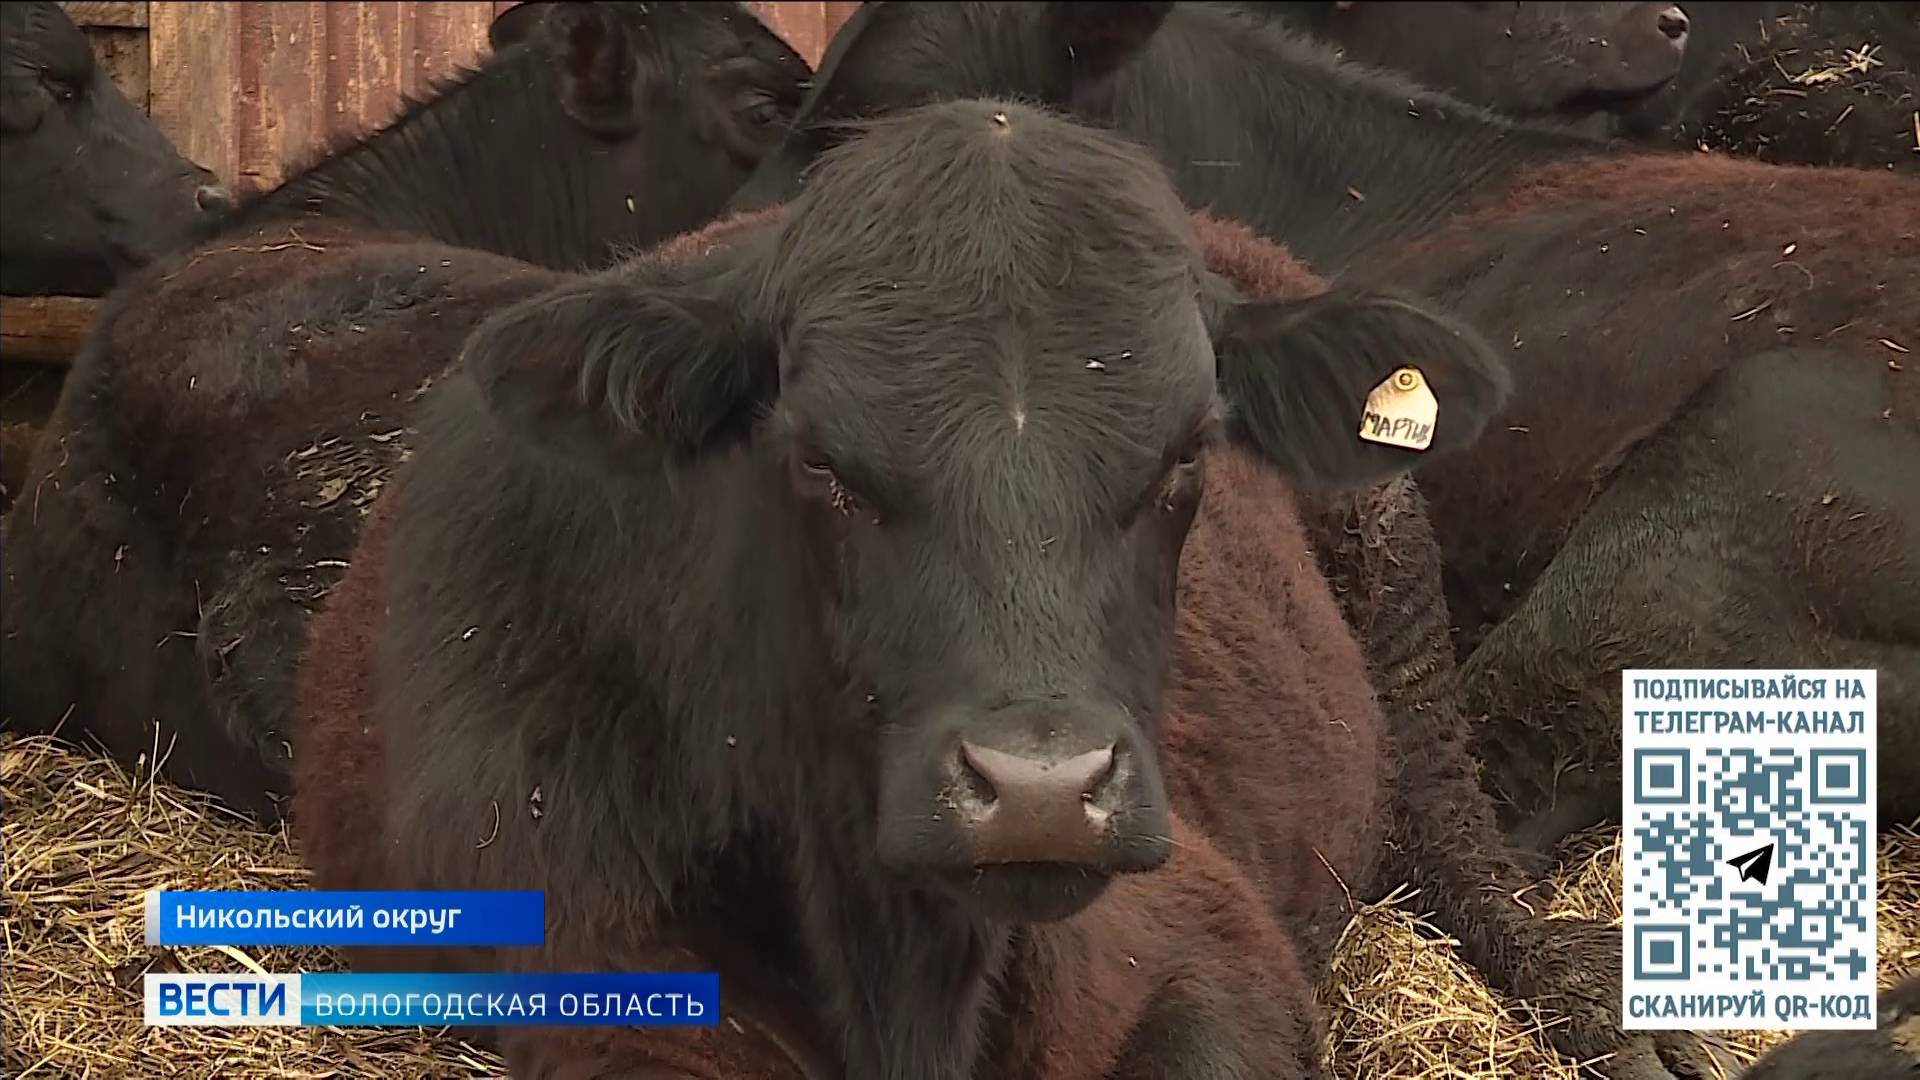 Фермеры могут получить крупный грант на развитие собственного хозяйства в Вологодской области